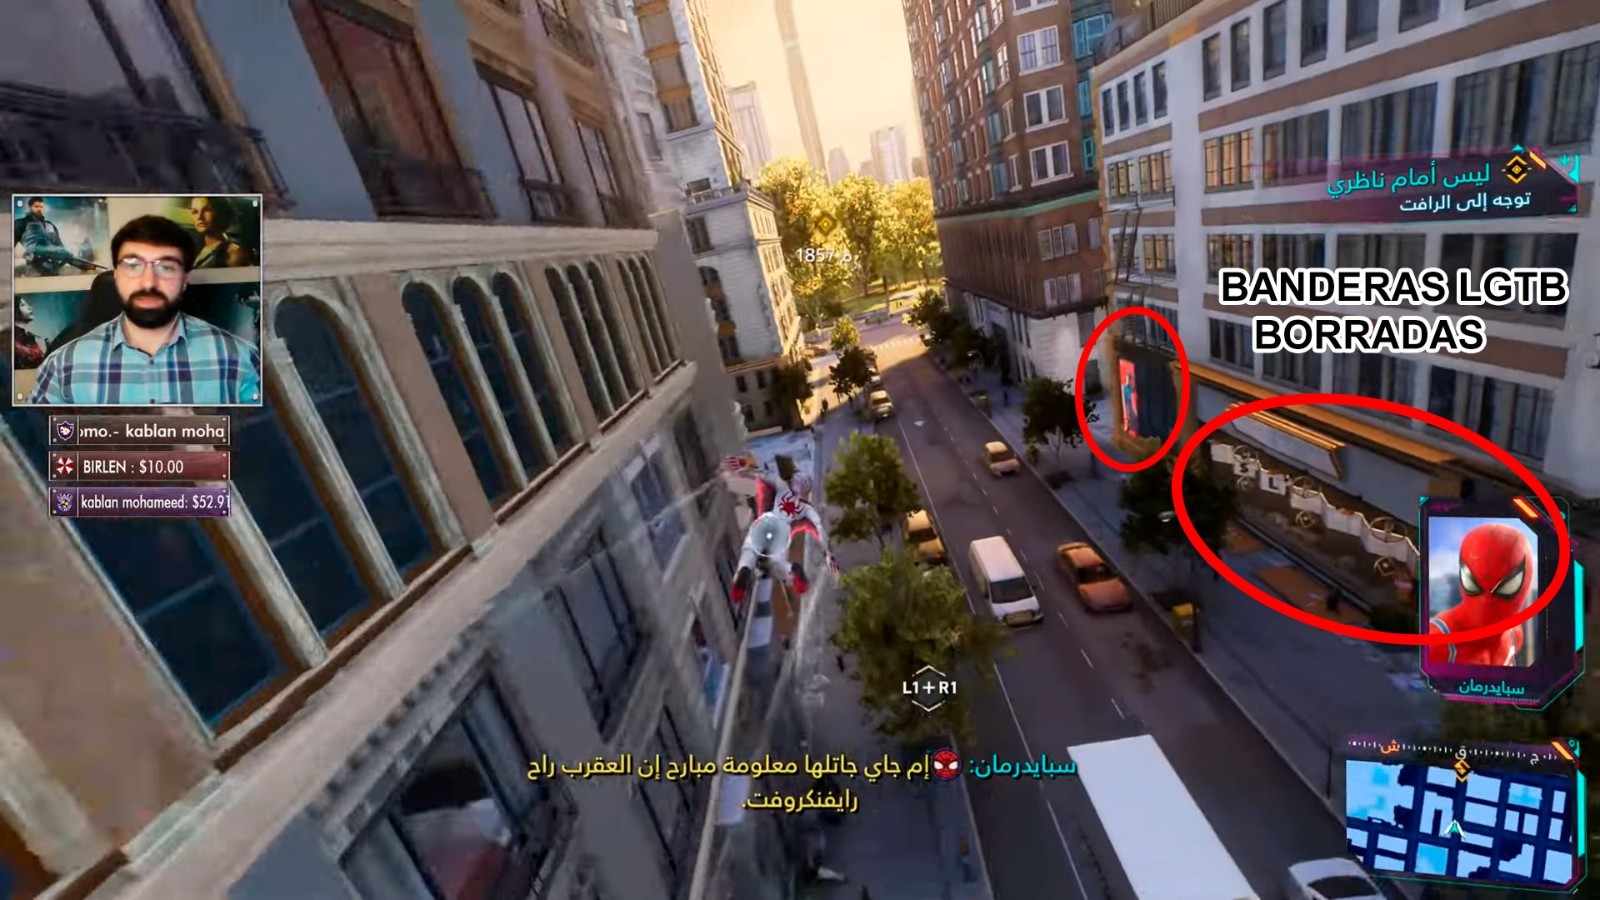 为了《漫威蜘蛛侠2》在沙特过审 索尼删除了游戏中LGBTQ+元素